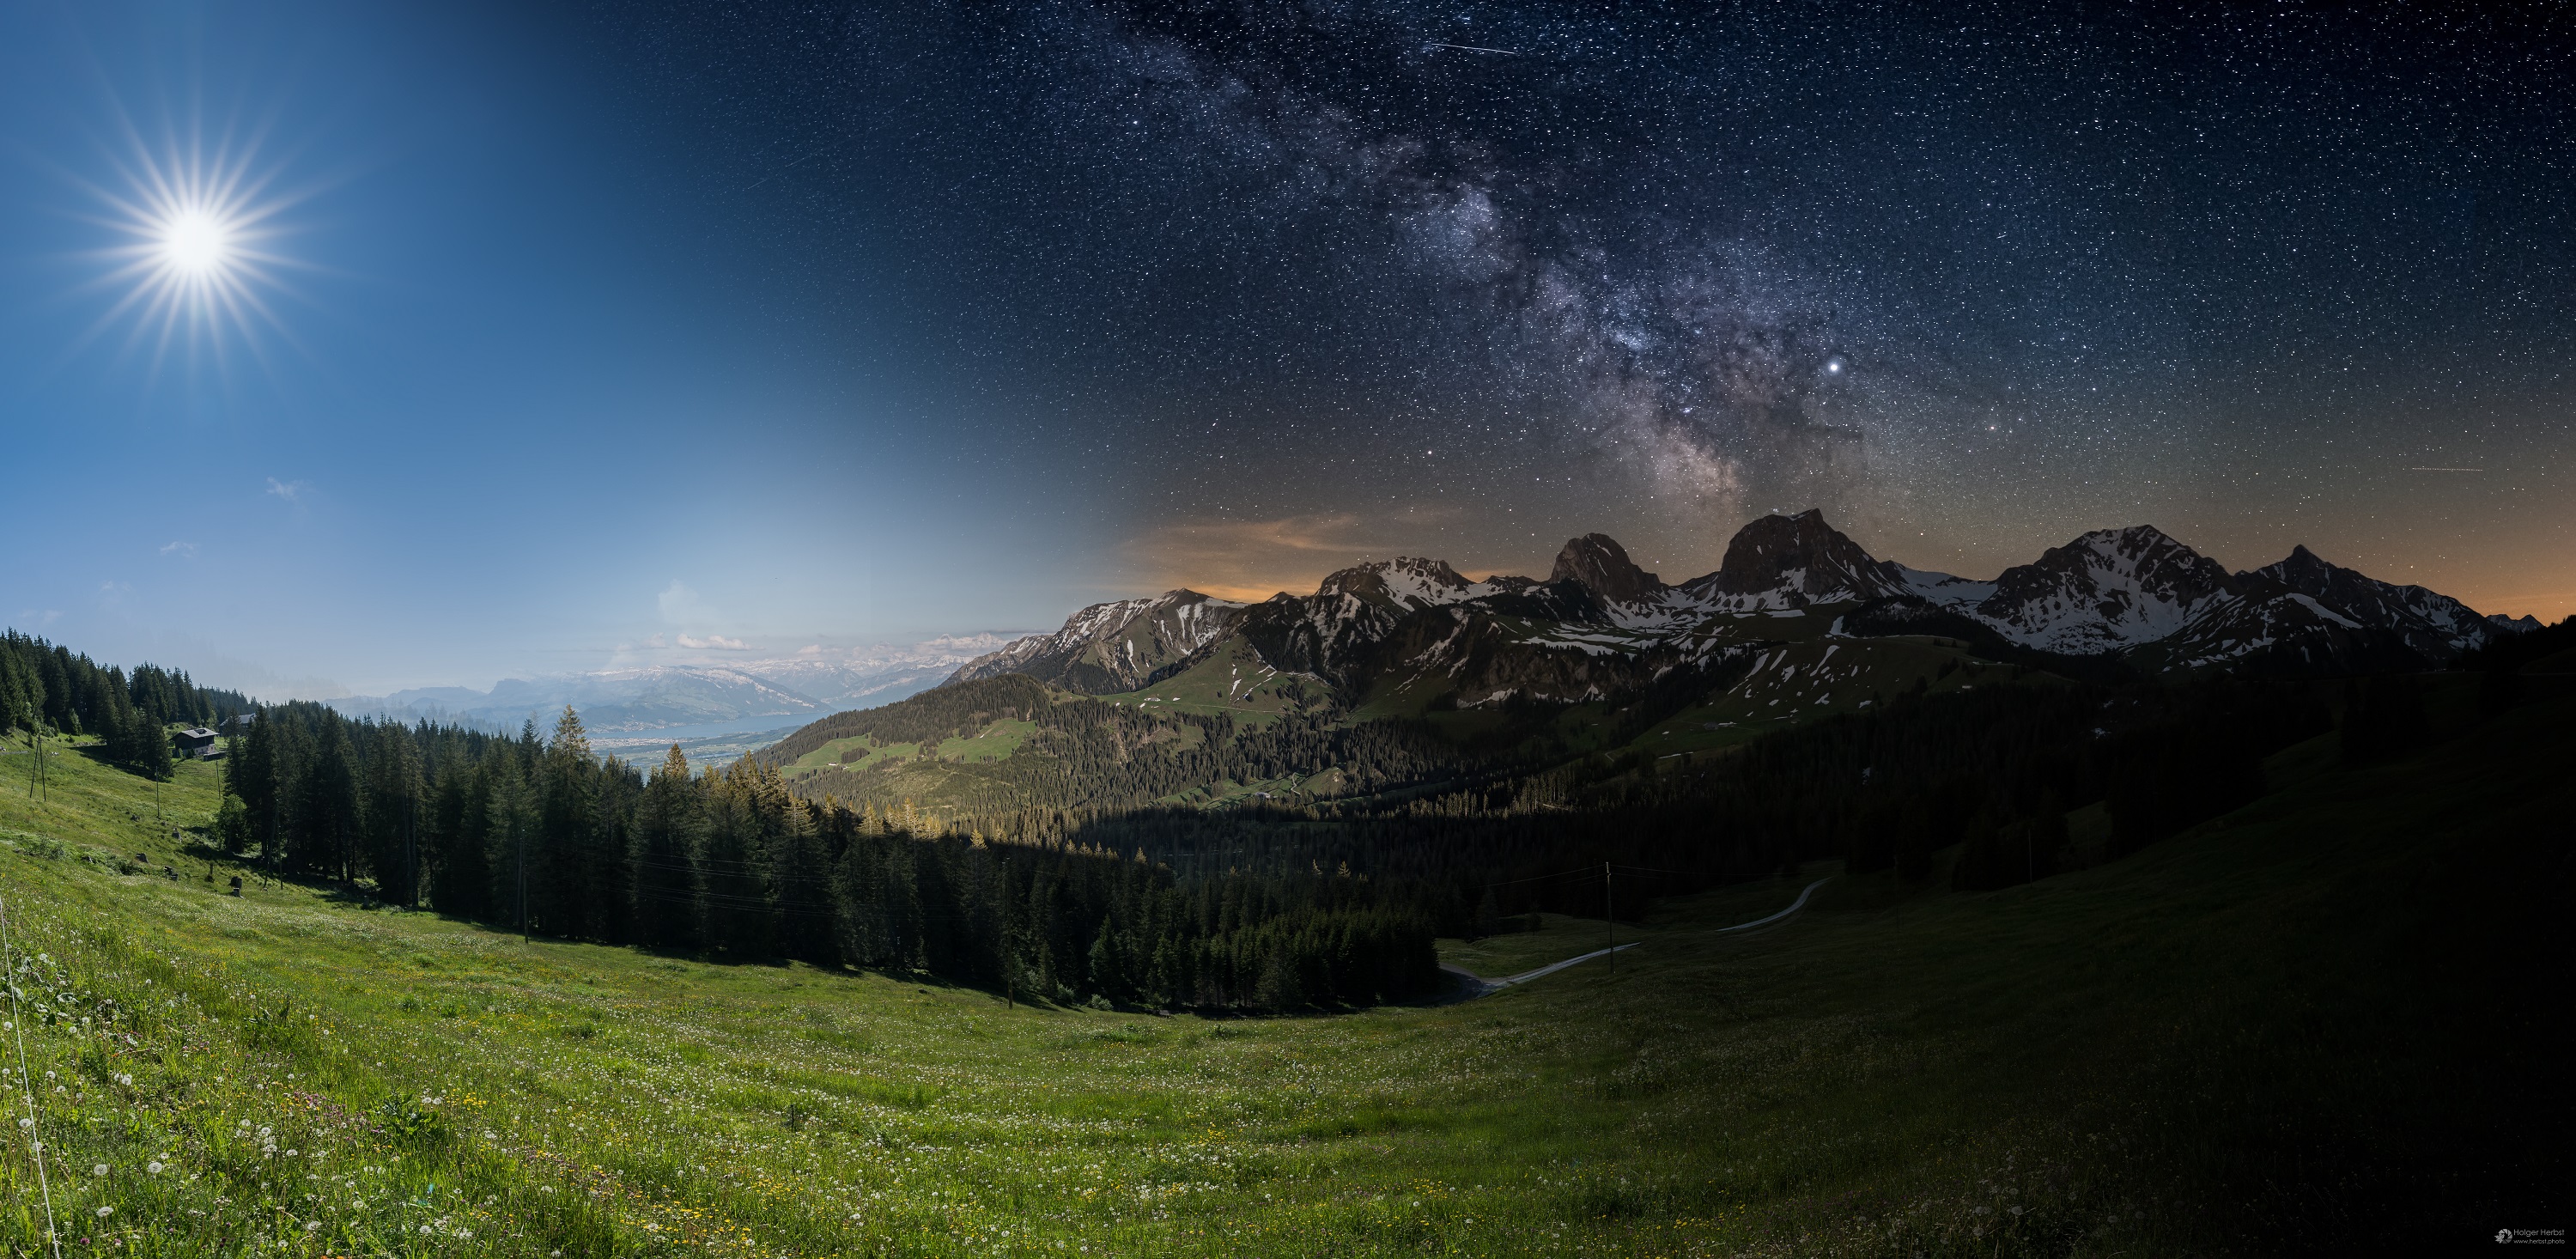 Day and night over Gantrisch, Switzerland